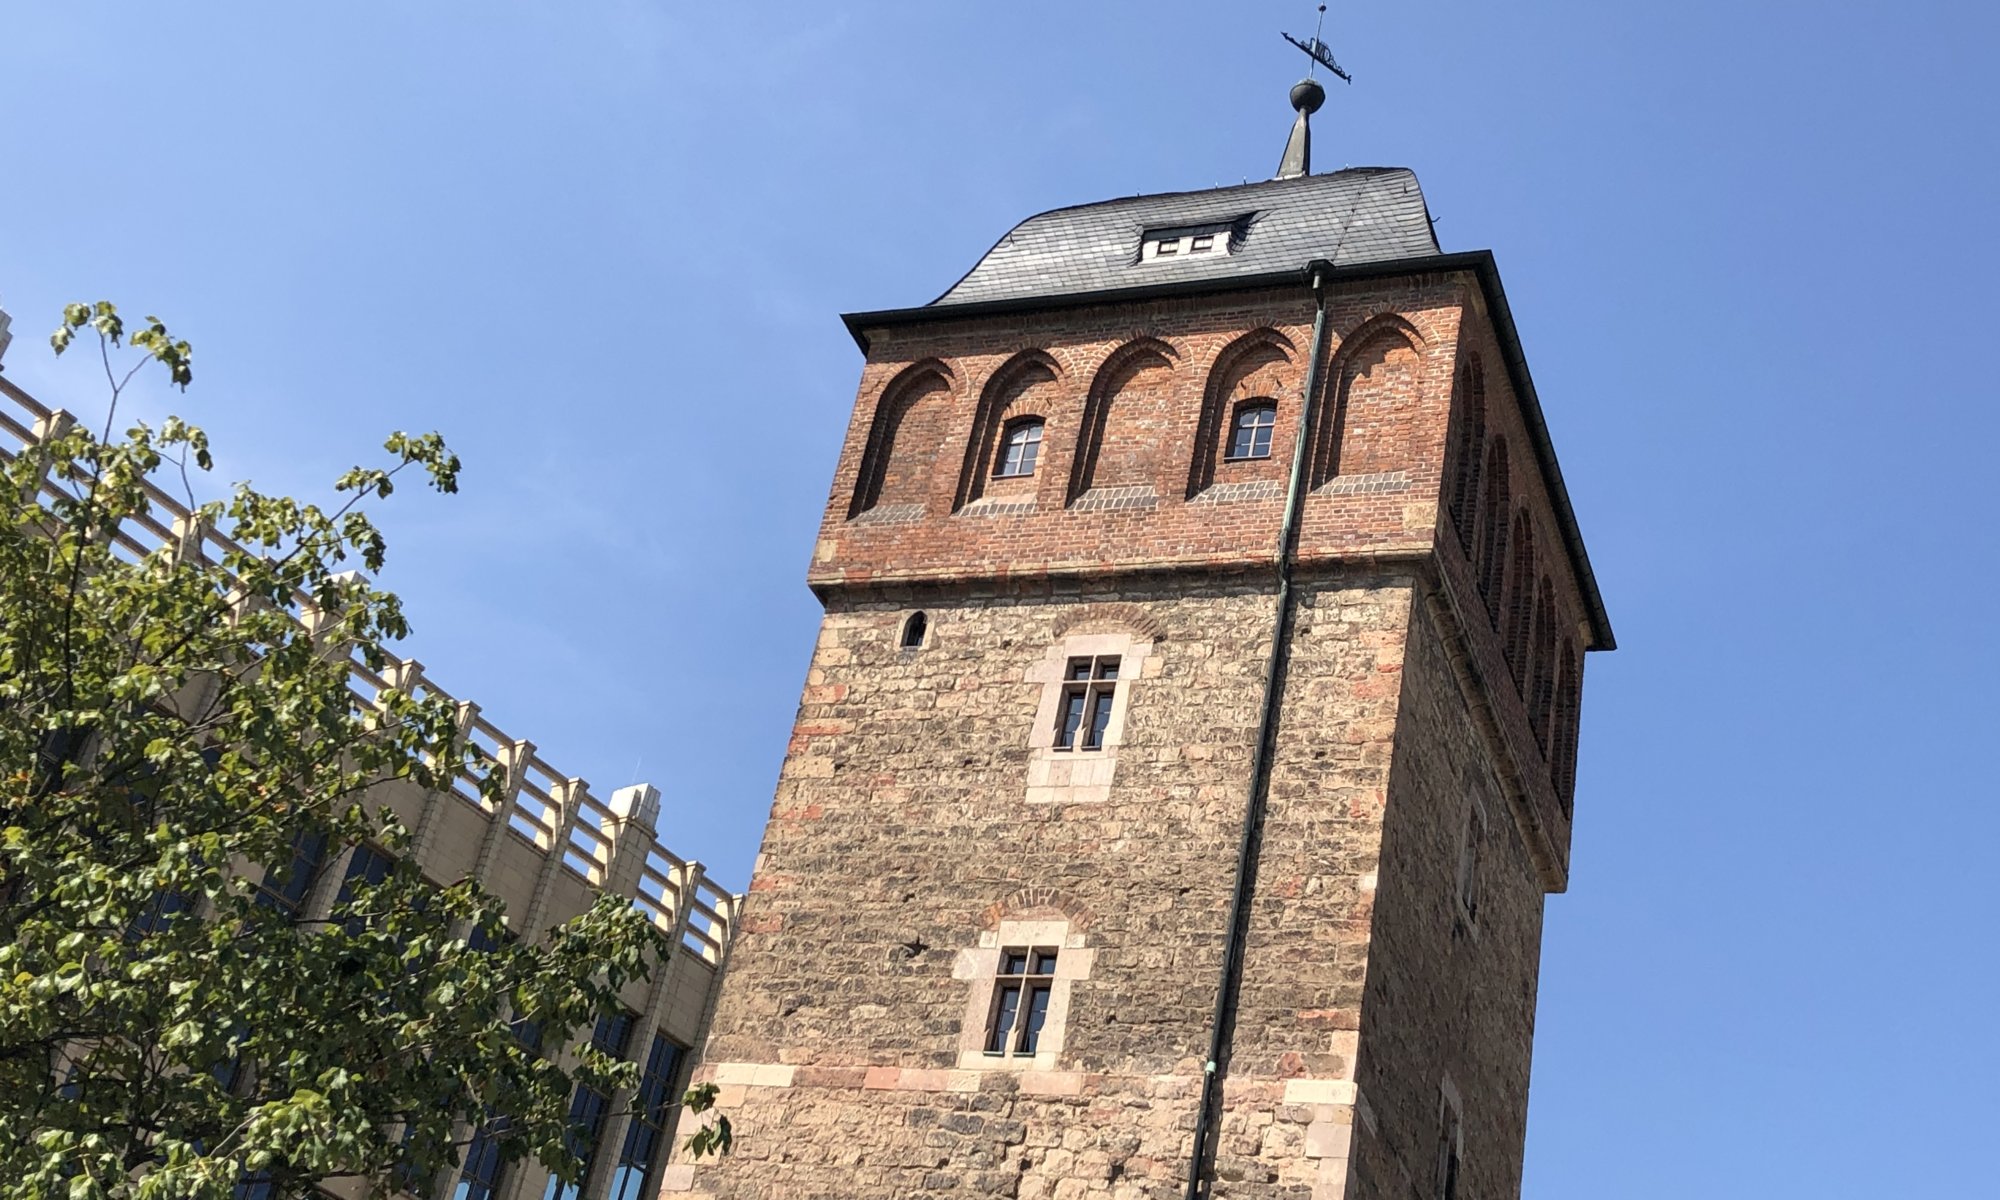 Roter Turm, Chemnitz